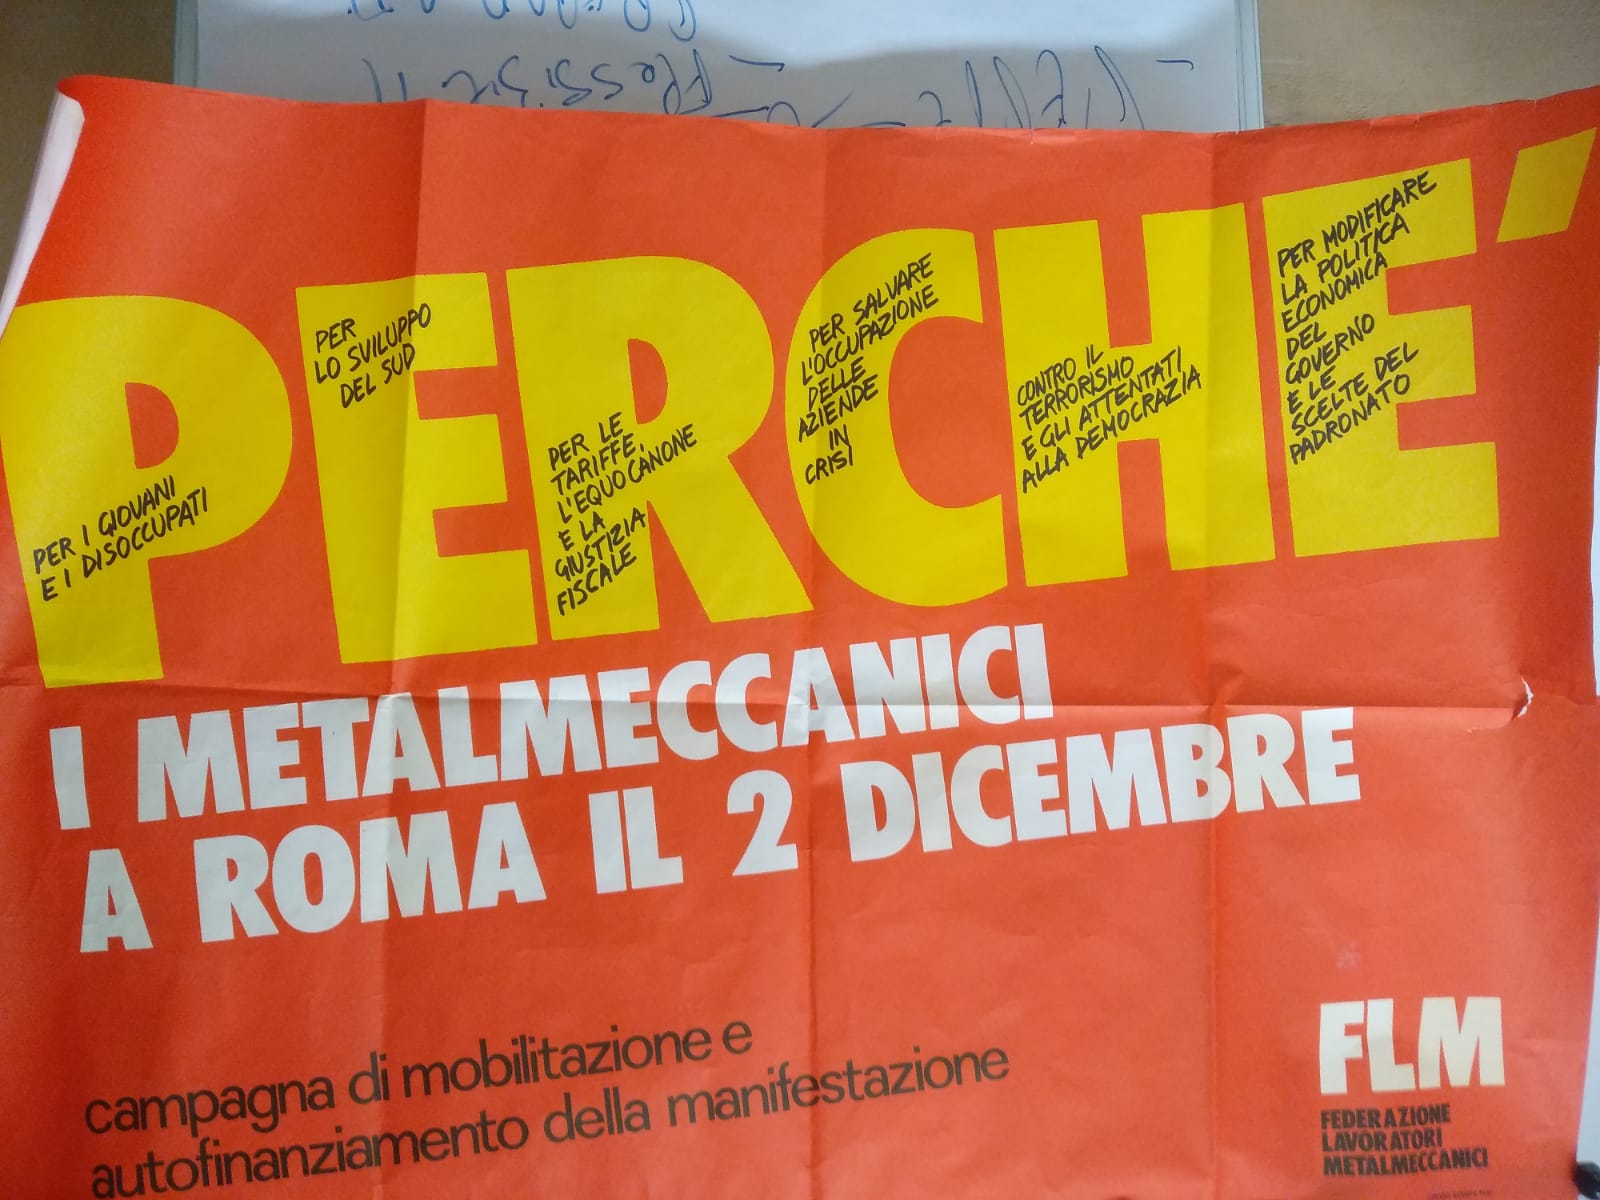 I metalmeccanici a Roma